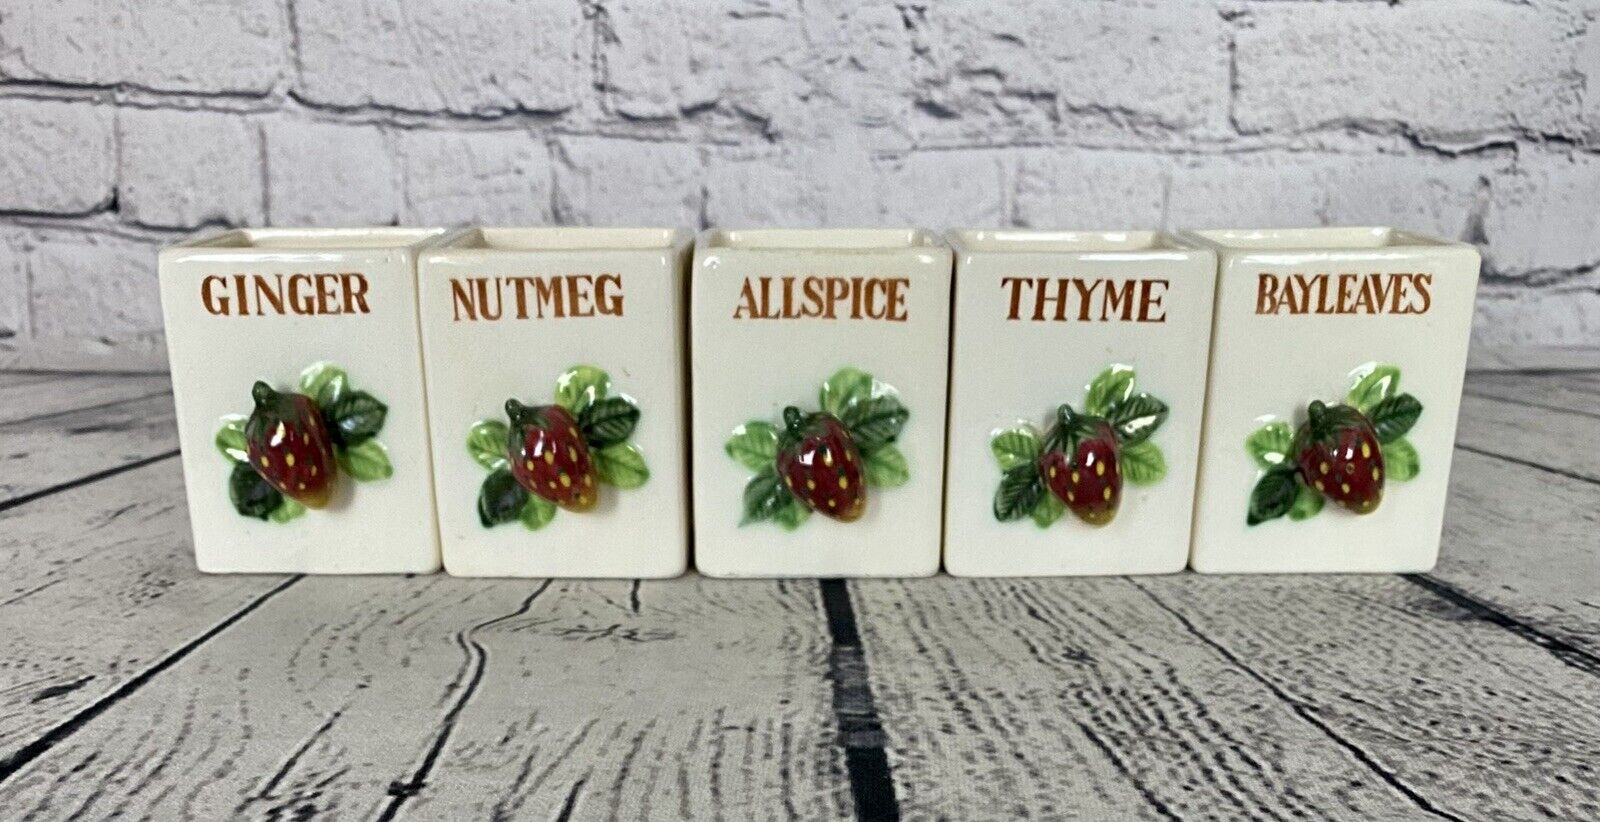 Vtg Kitchen Strawberry Theme Ceramic Spice Jars Ginger Nutmeg Allspice Thyme Bay